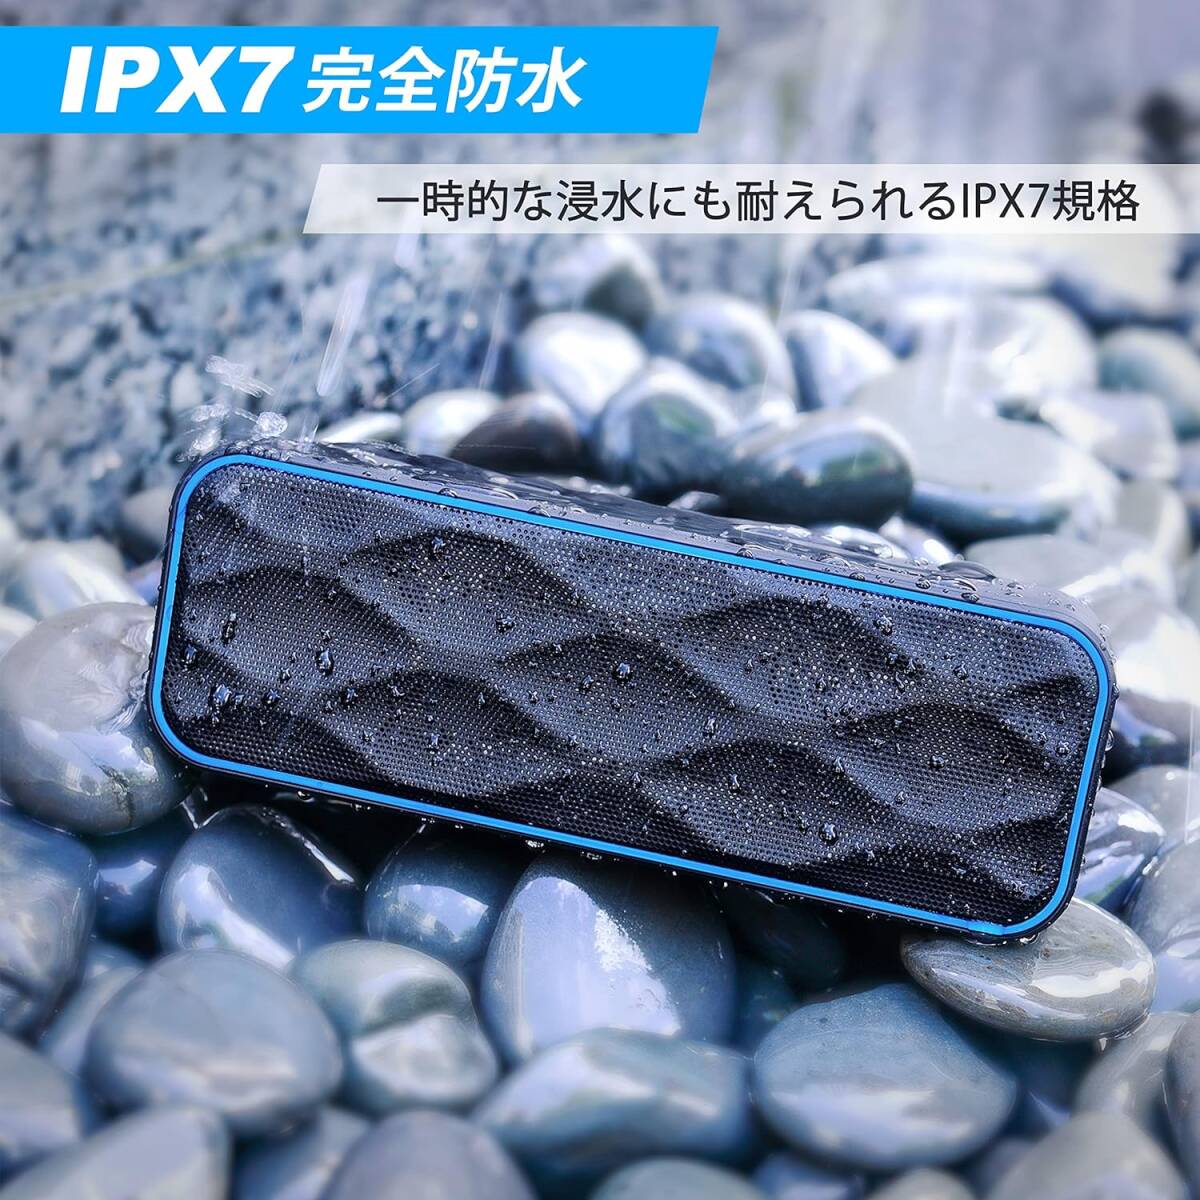 おすすめ Bluetooth スピーカー ワイヤレス IPX7防水 20W ステ